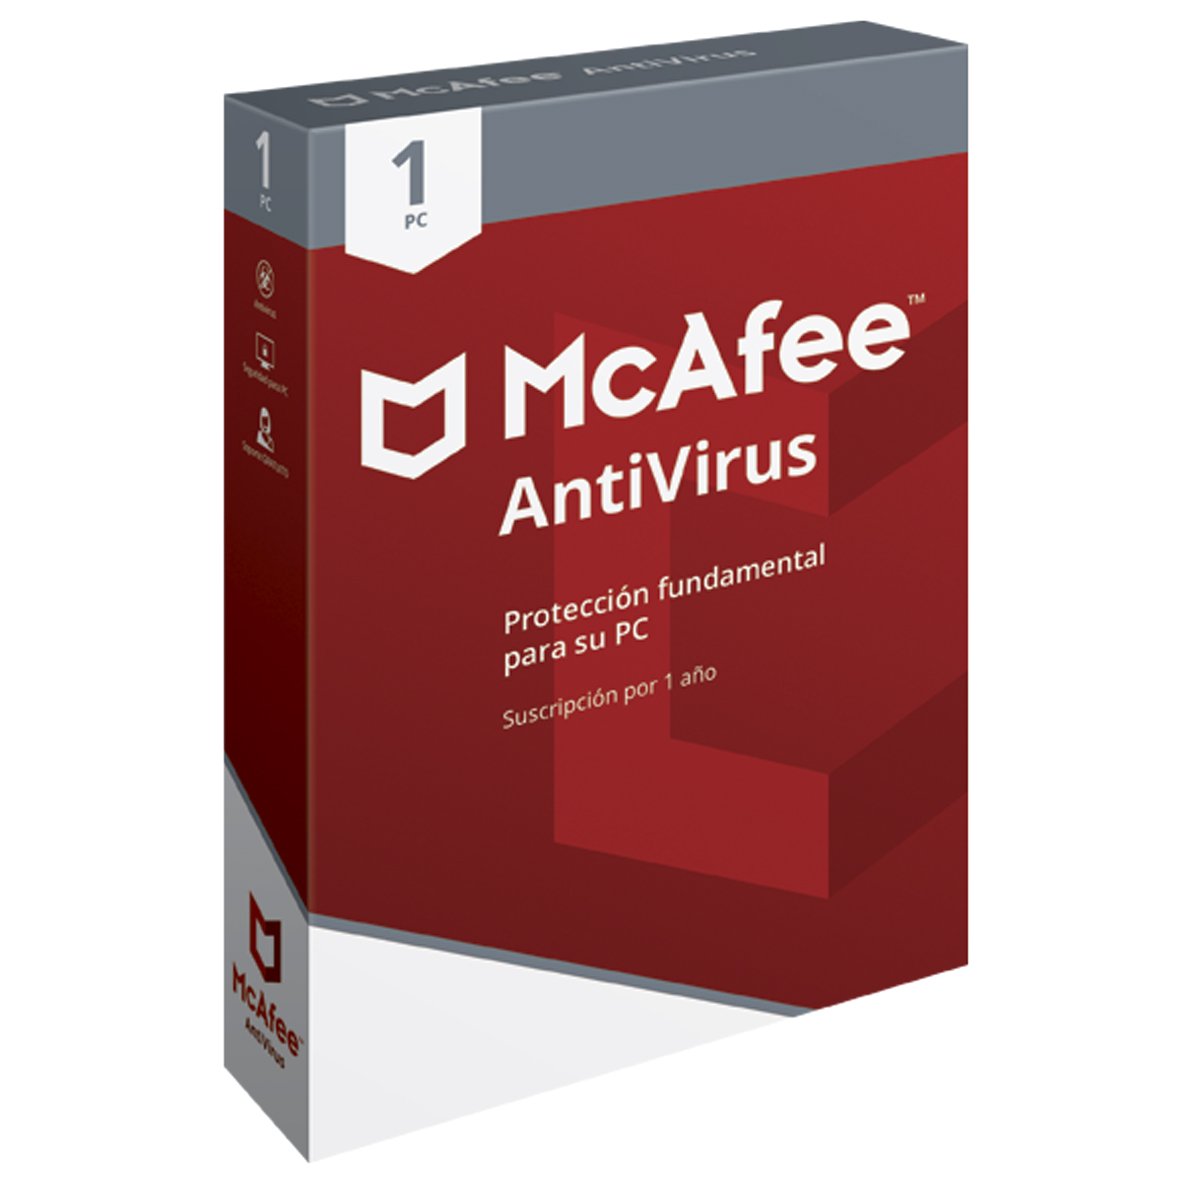 Mcafee Antivirus 1 Pc